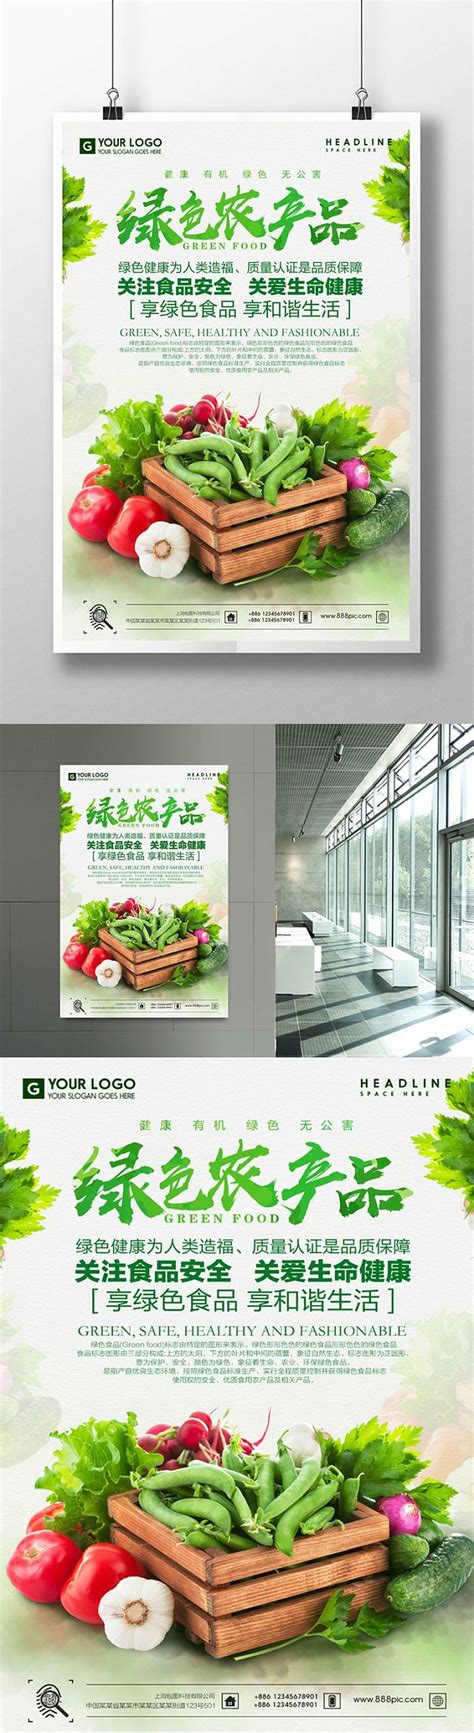 2019年中央财政重点补助5个农业绿色发展工程建设项目-黑龙江省华牧生物技术有限公司-官网